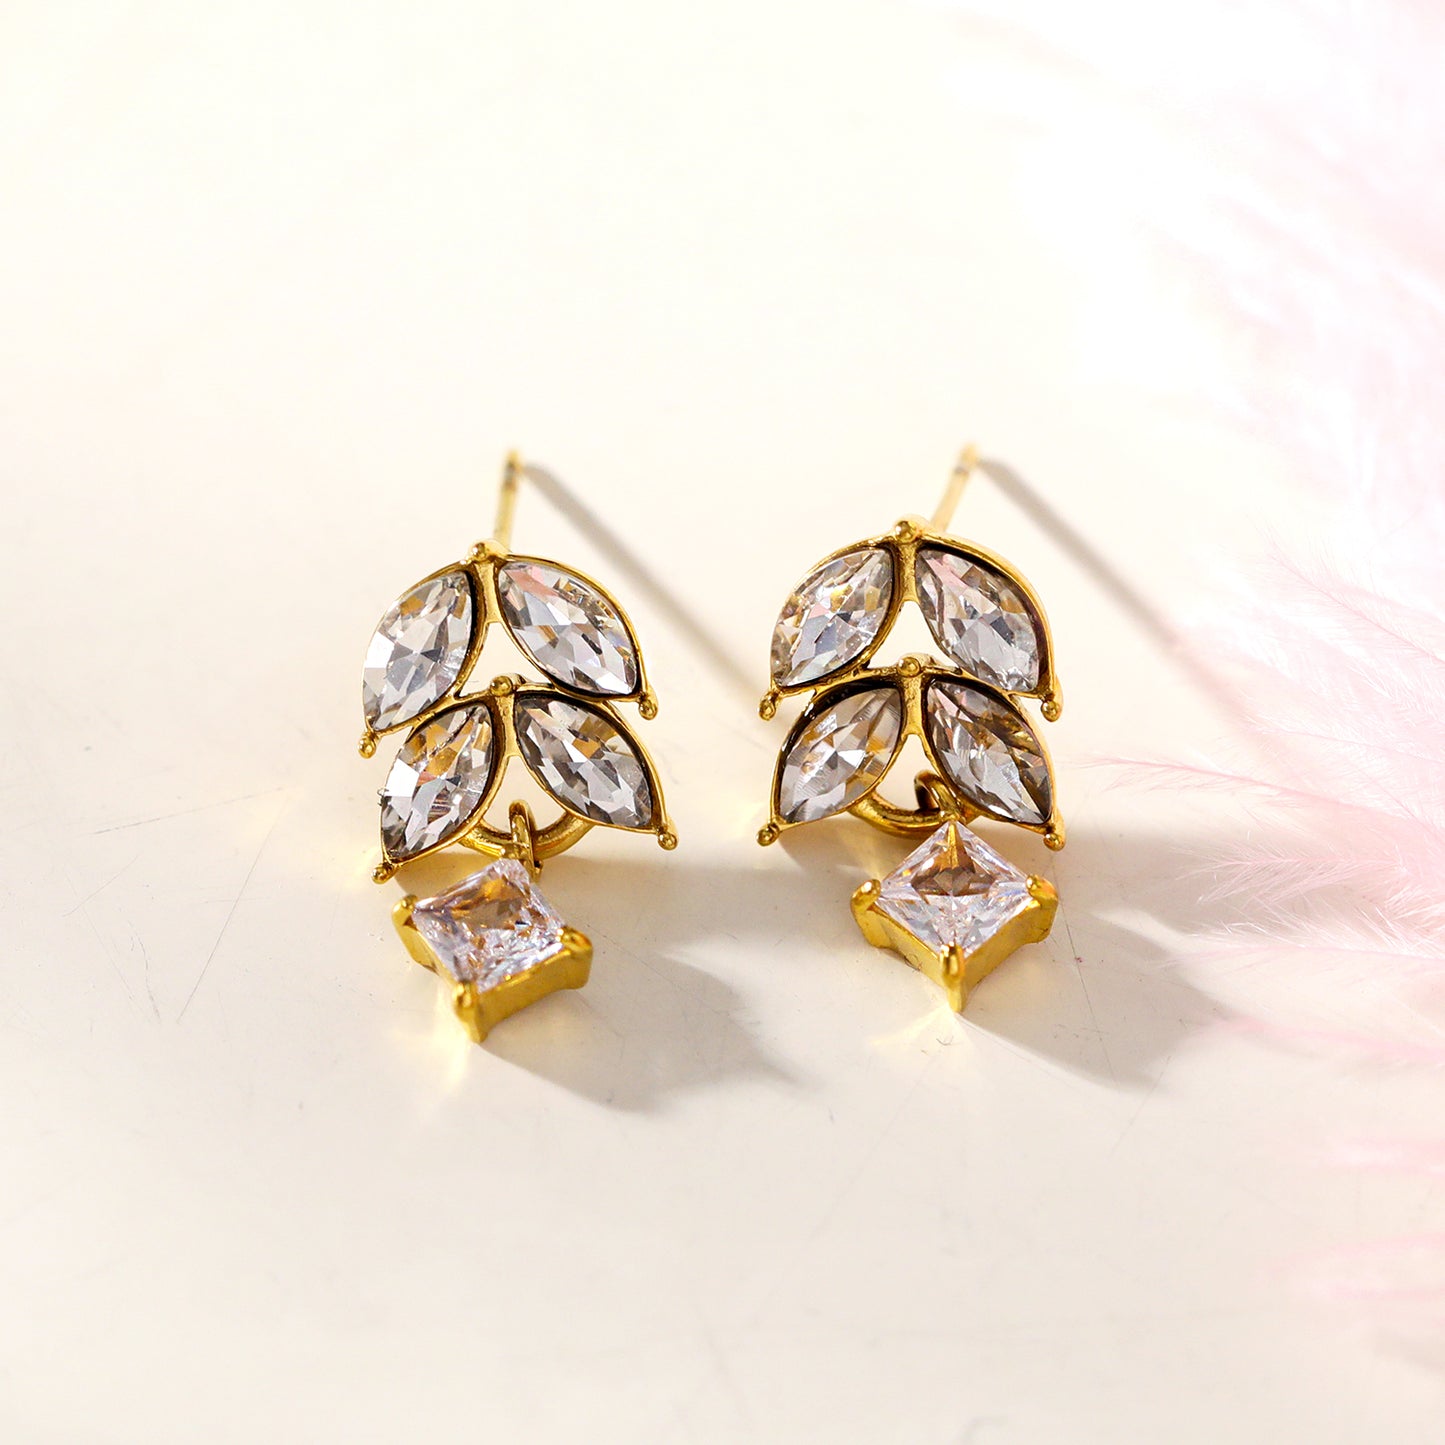 Style ESPERANZA 76925: Vintage Inspired 'Floral Elegance' Earrings with Zirconia Gemstones.